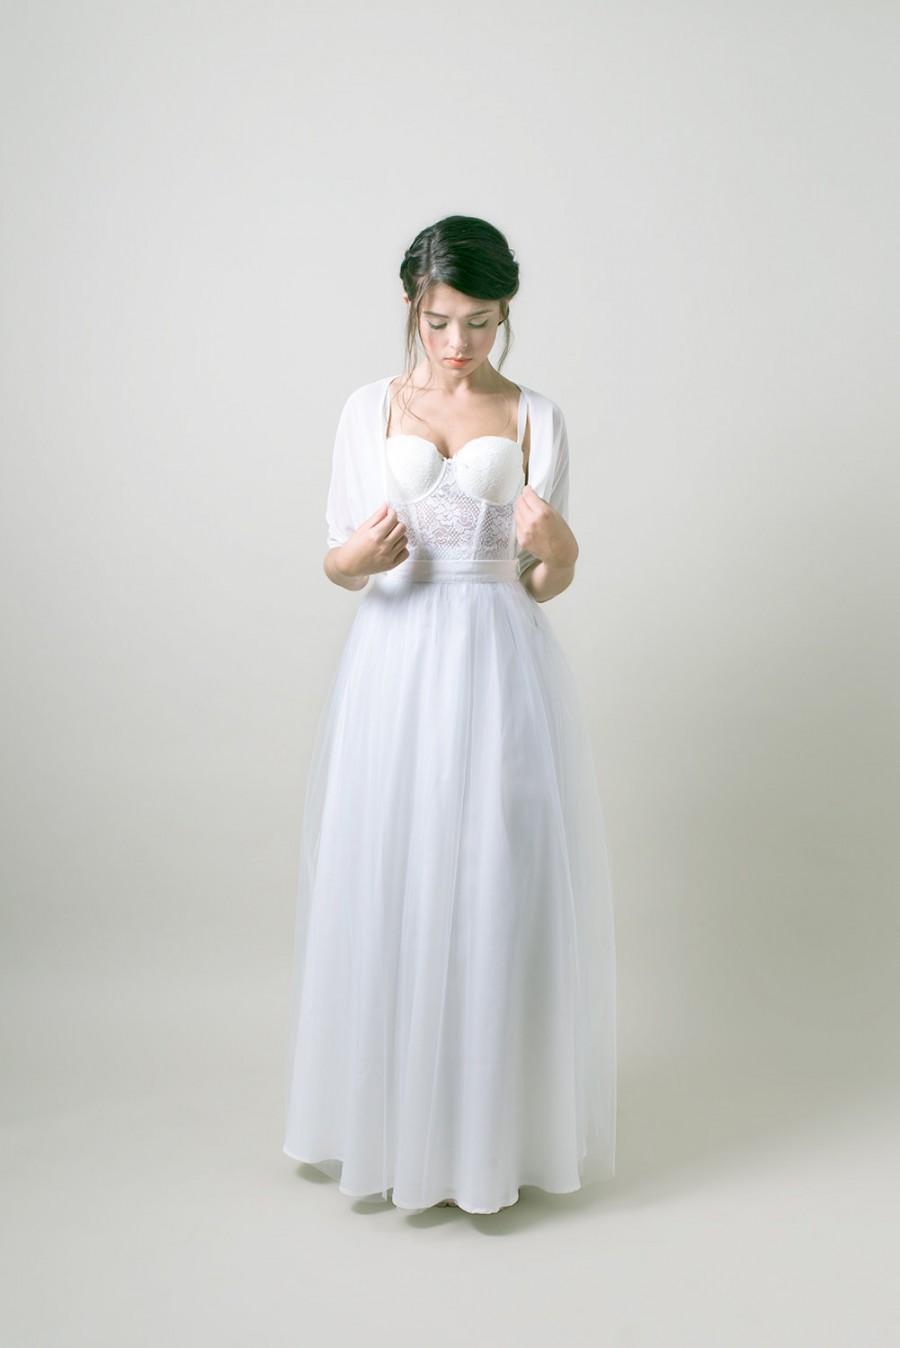 Wedding - White wedding bolero / Simple Bridal bolero / wedding jacket - Made to order